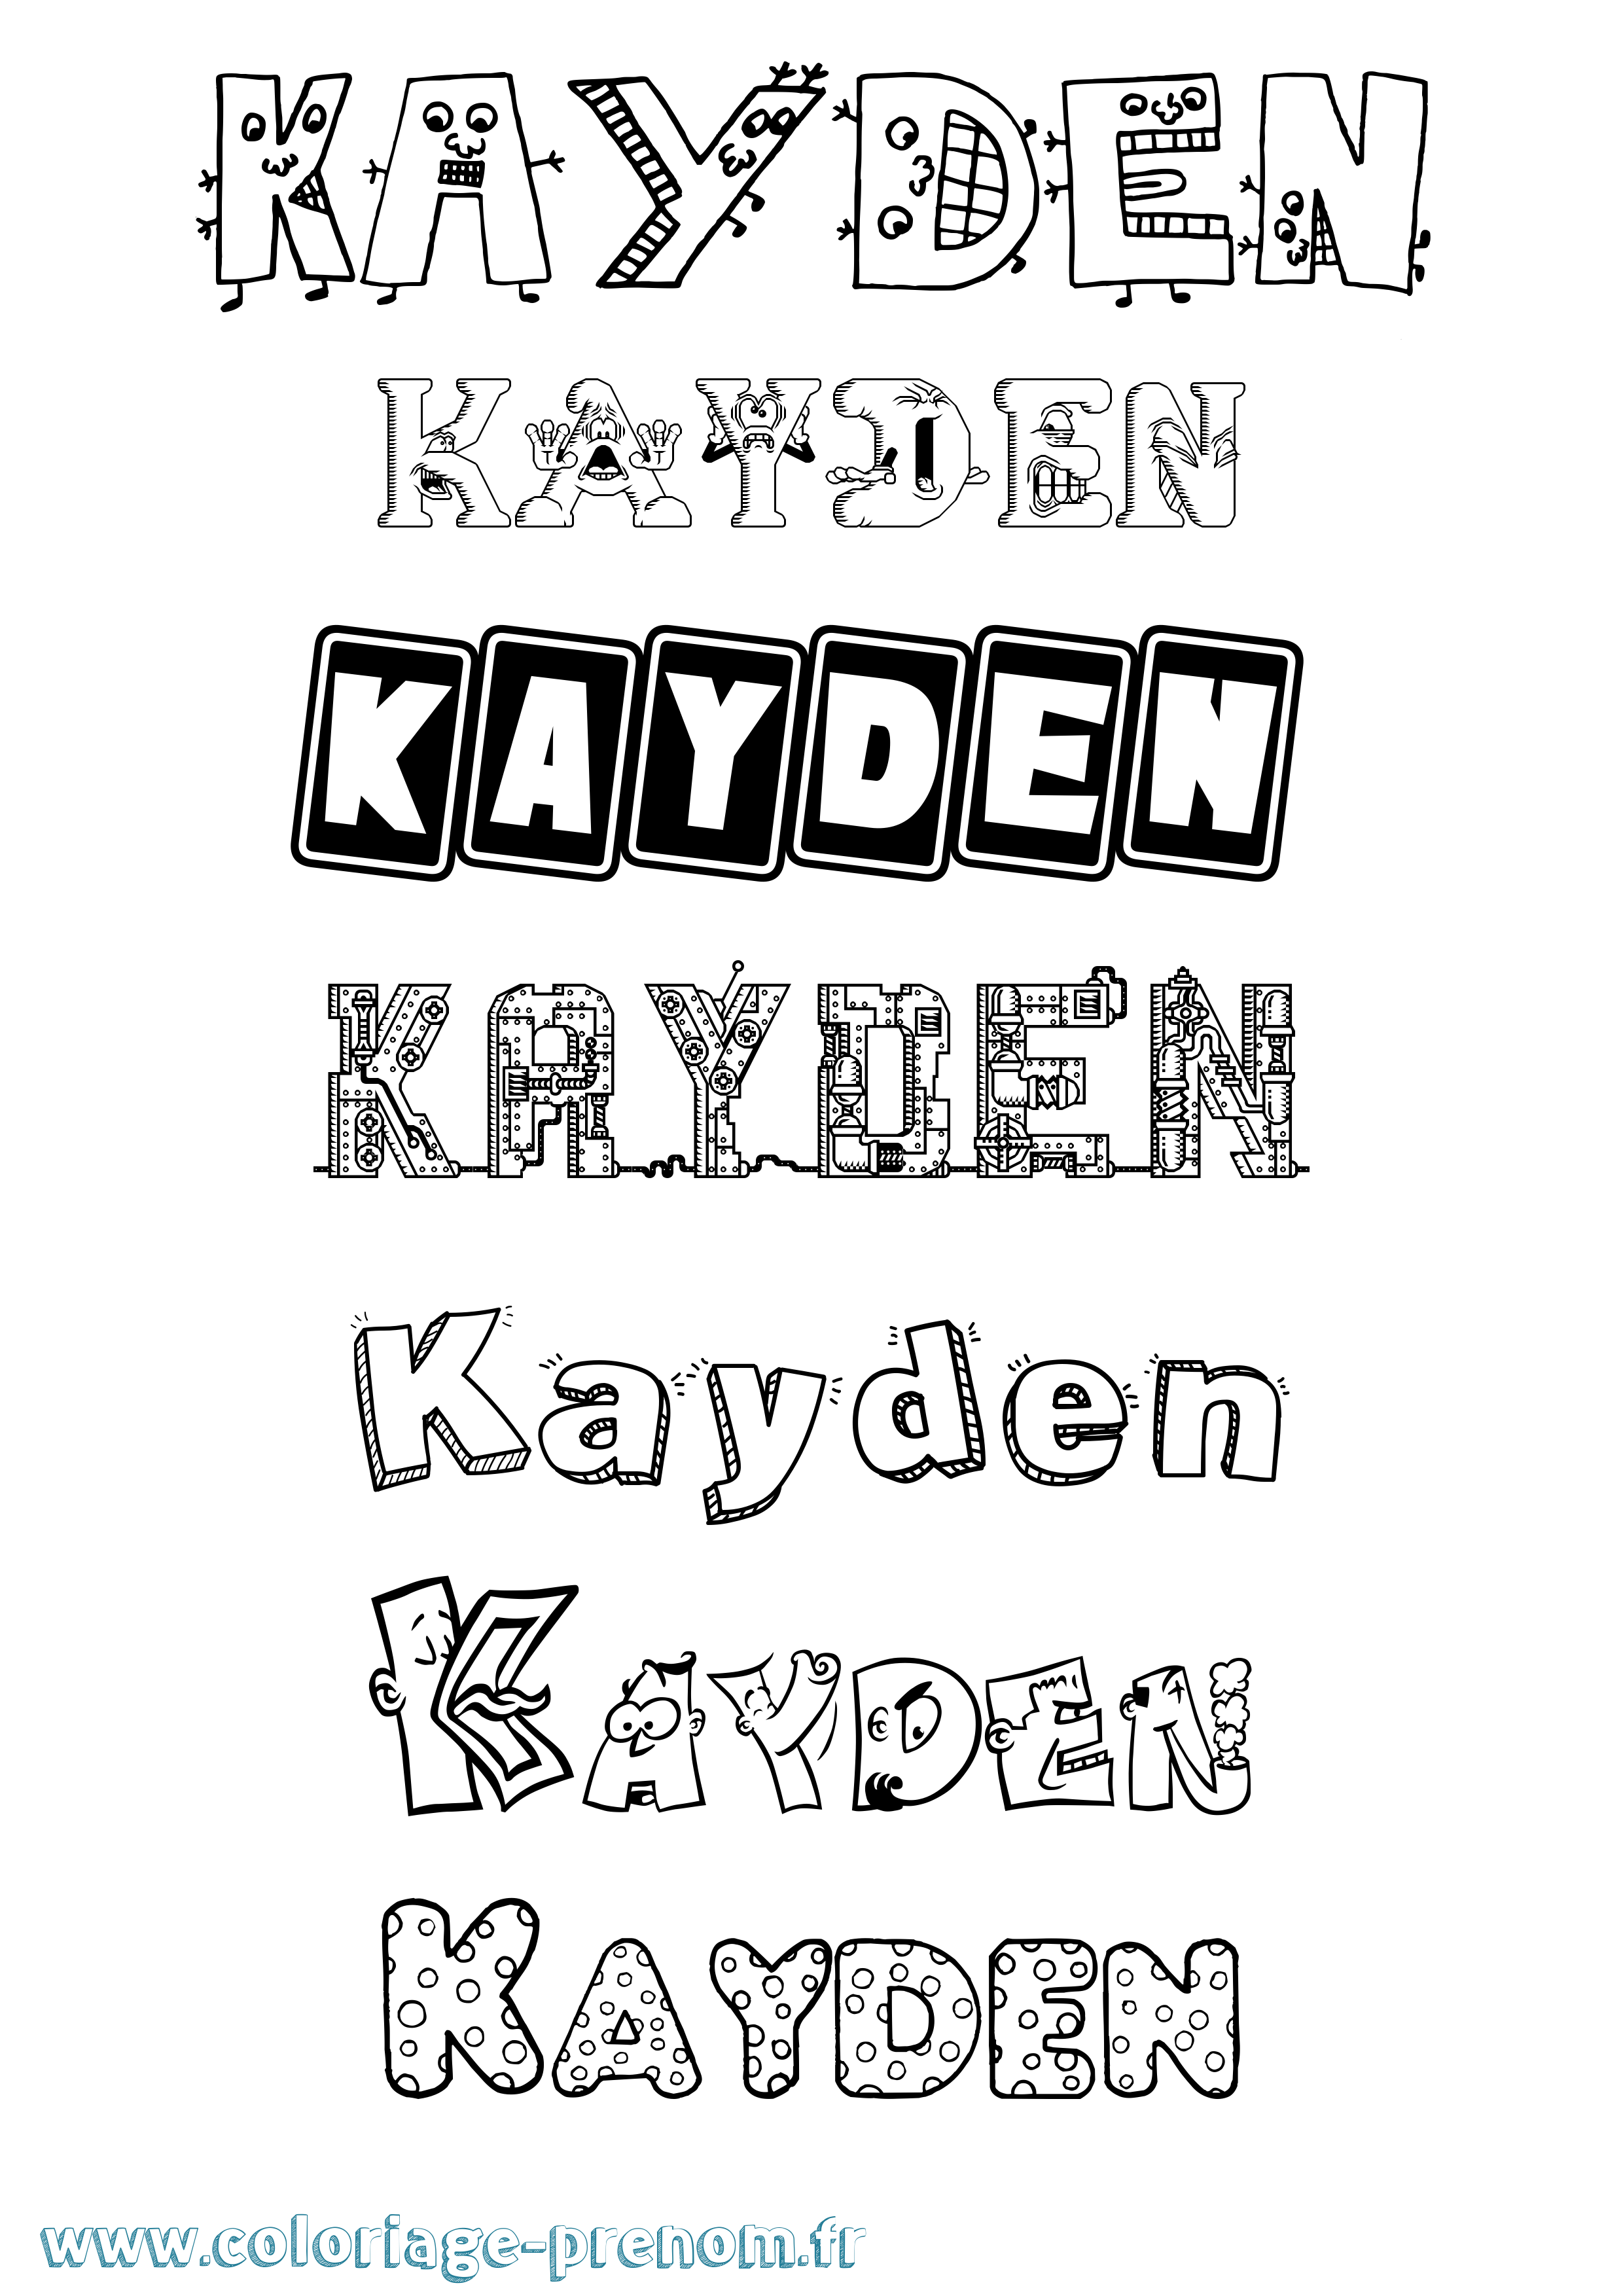 Coloriage prénom Kayden Fun